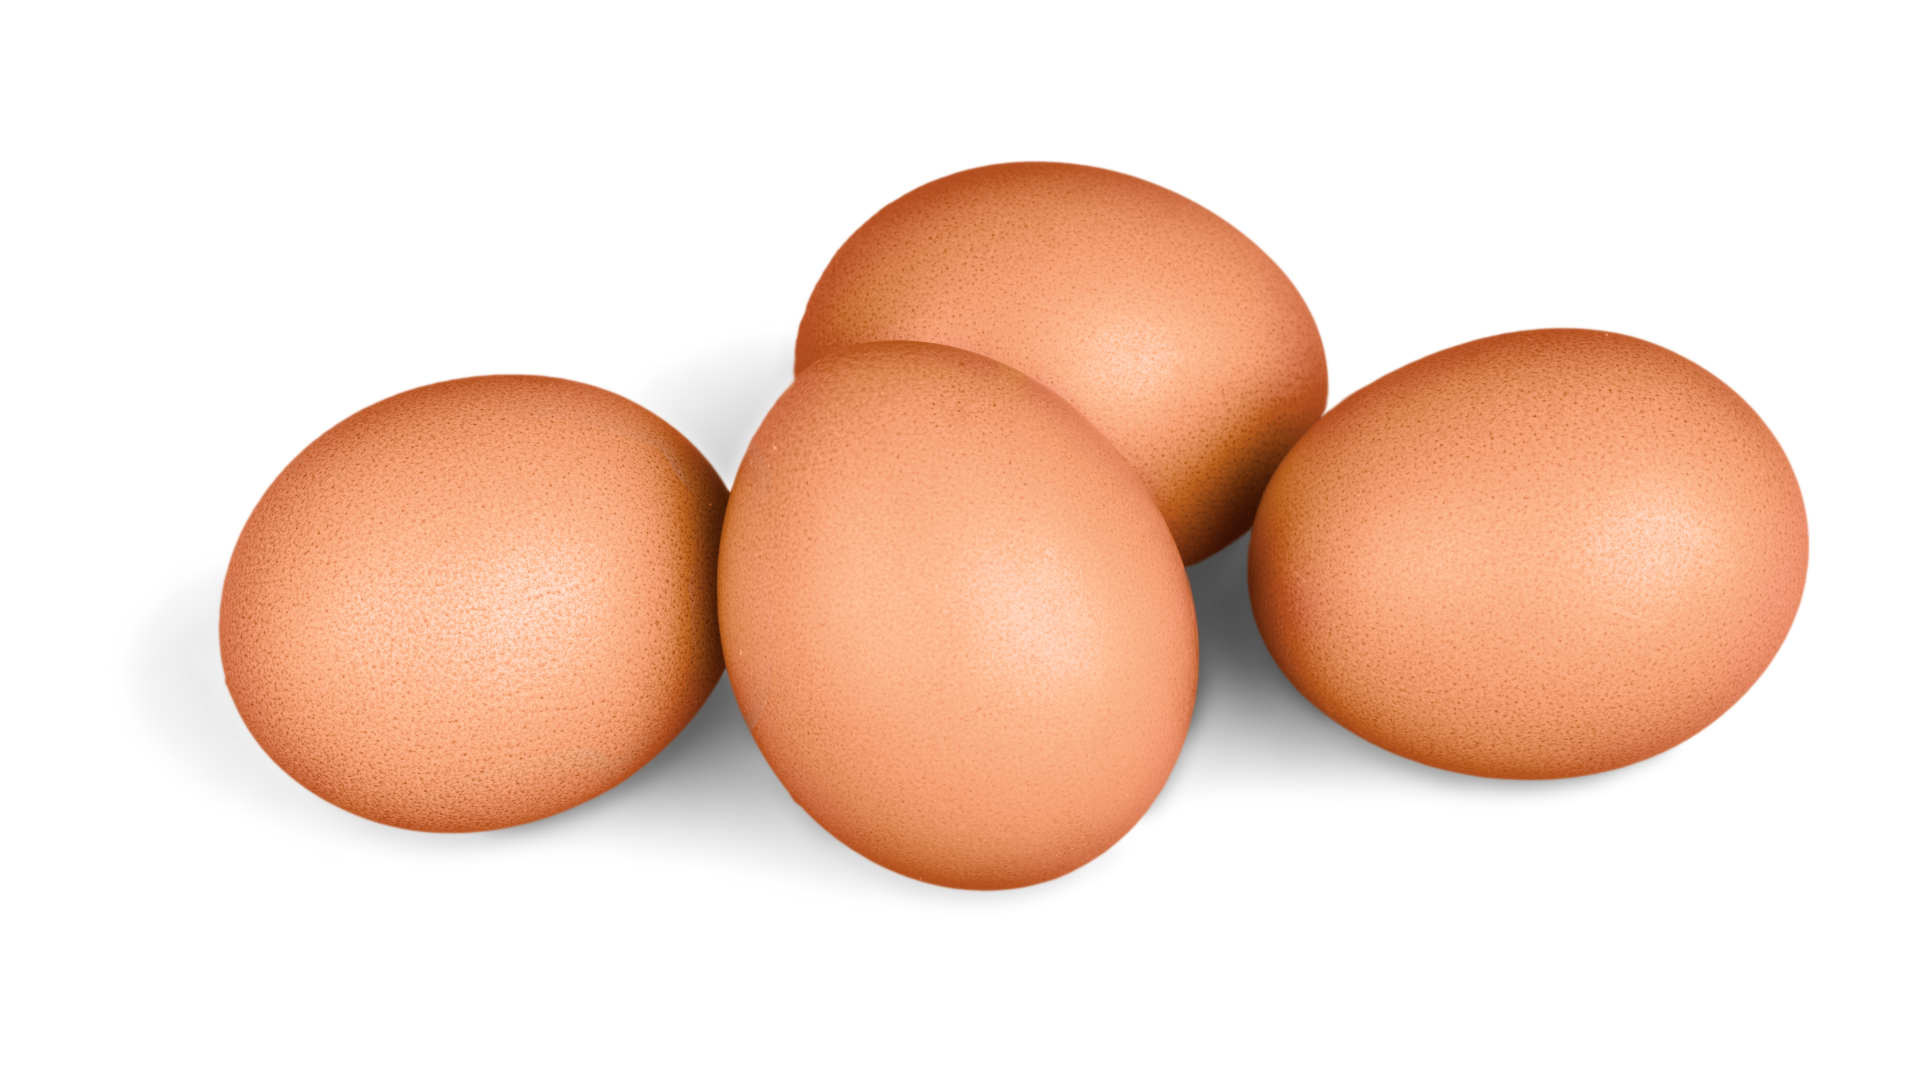 Включи 3 яйца. Три яйца. Открытые яйца. Три яйца межчикие. Картина три яйца.